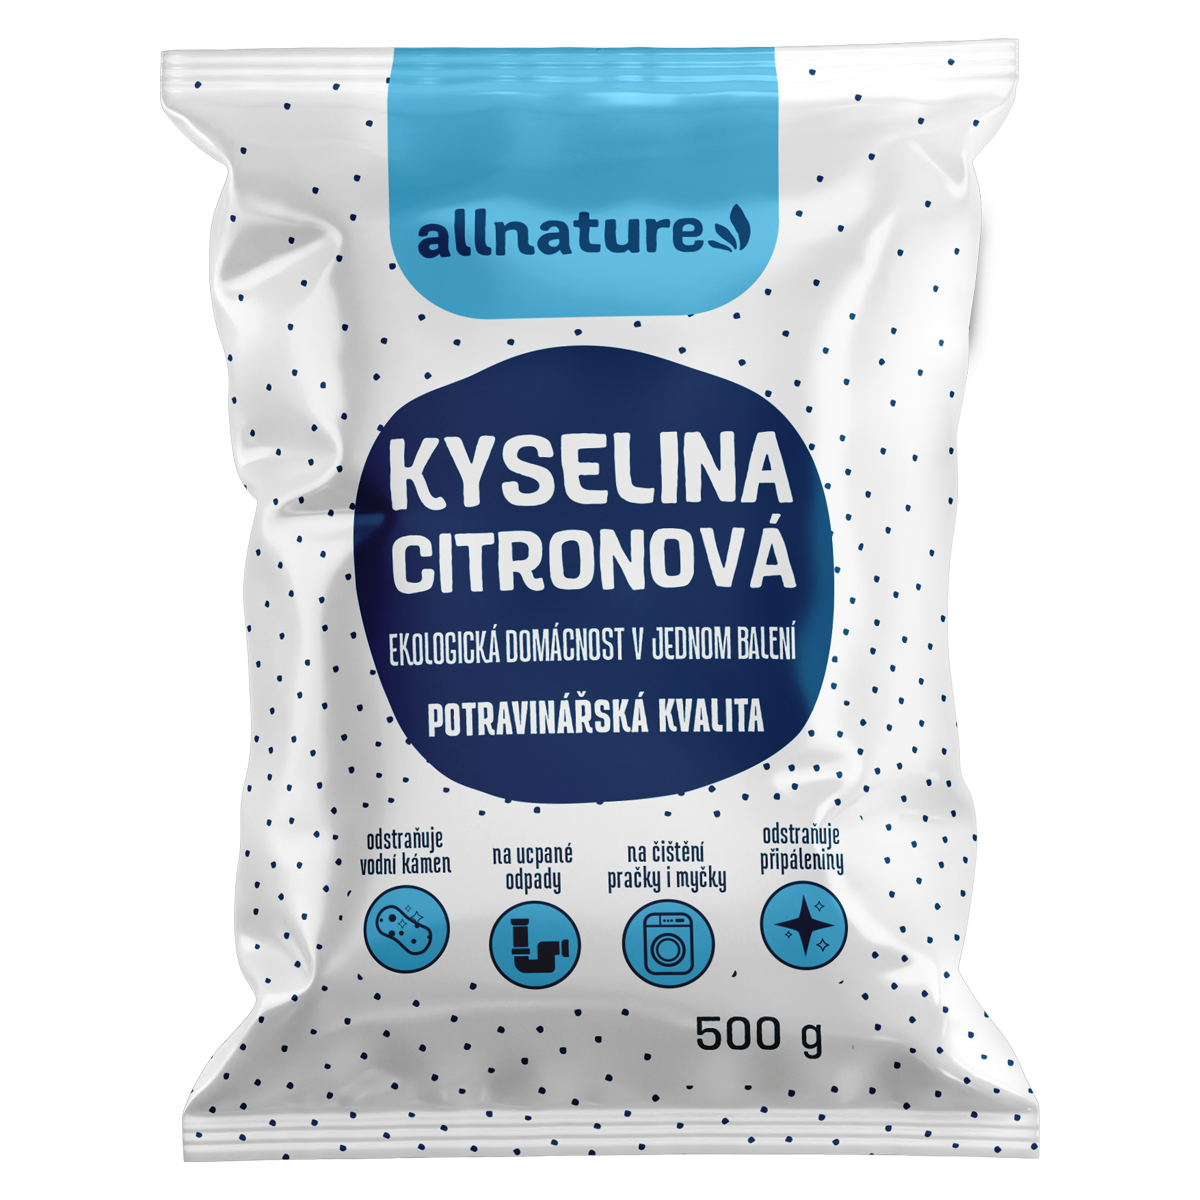 Allnature Kyselina citronová - 500 g - potravinářská kvalita Allnature